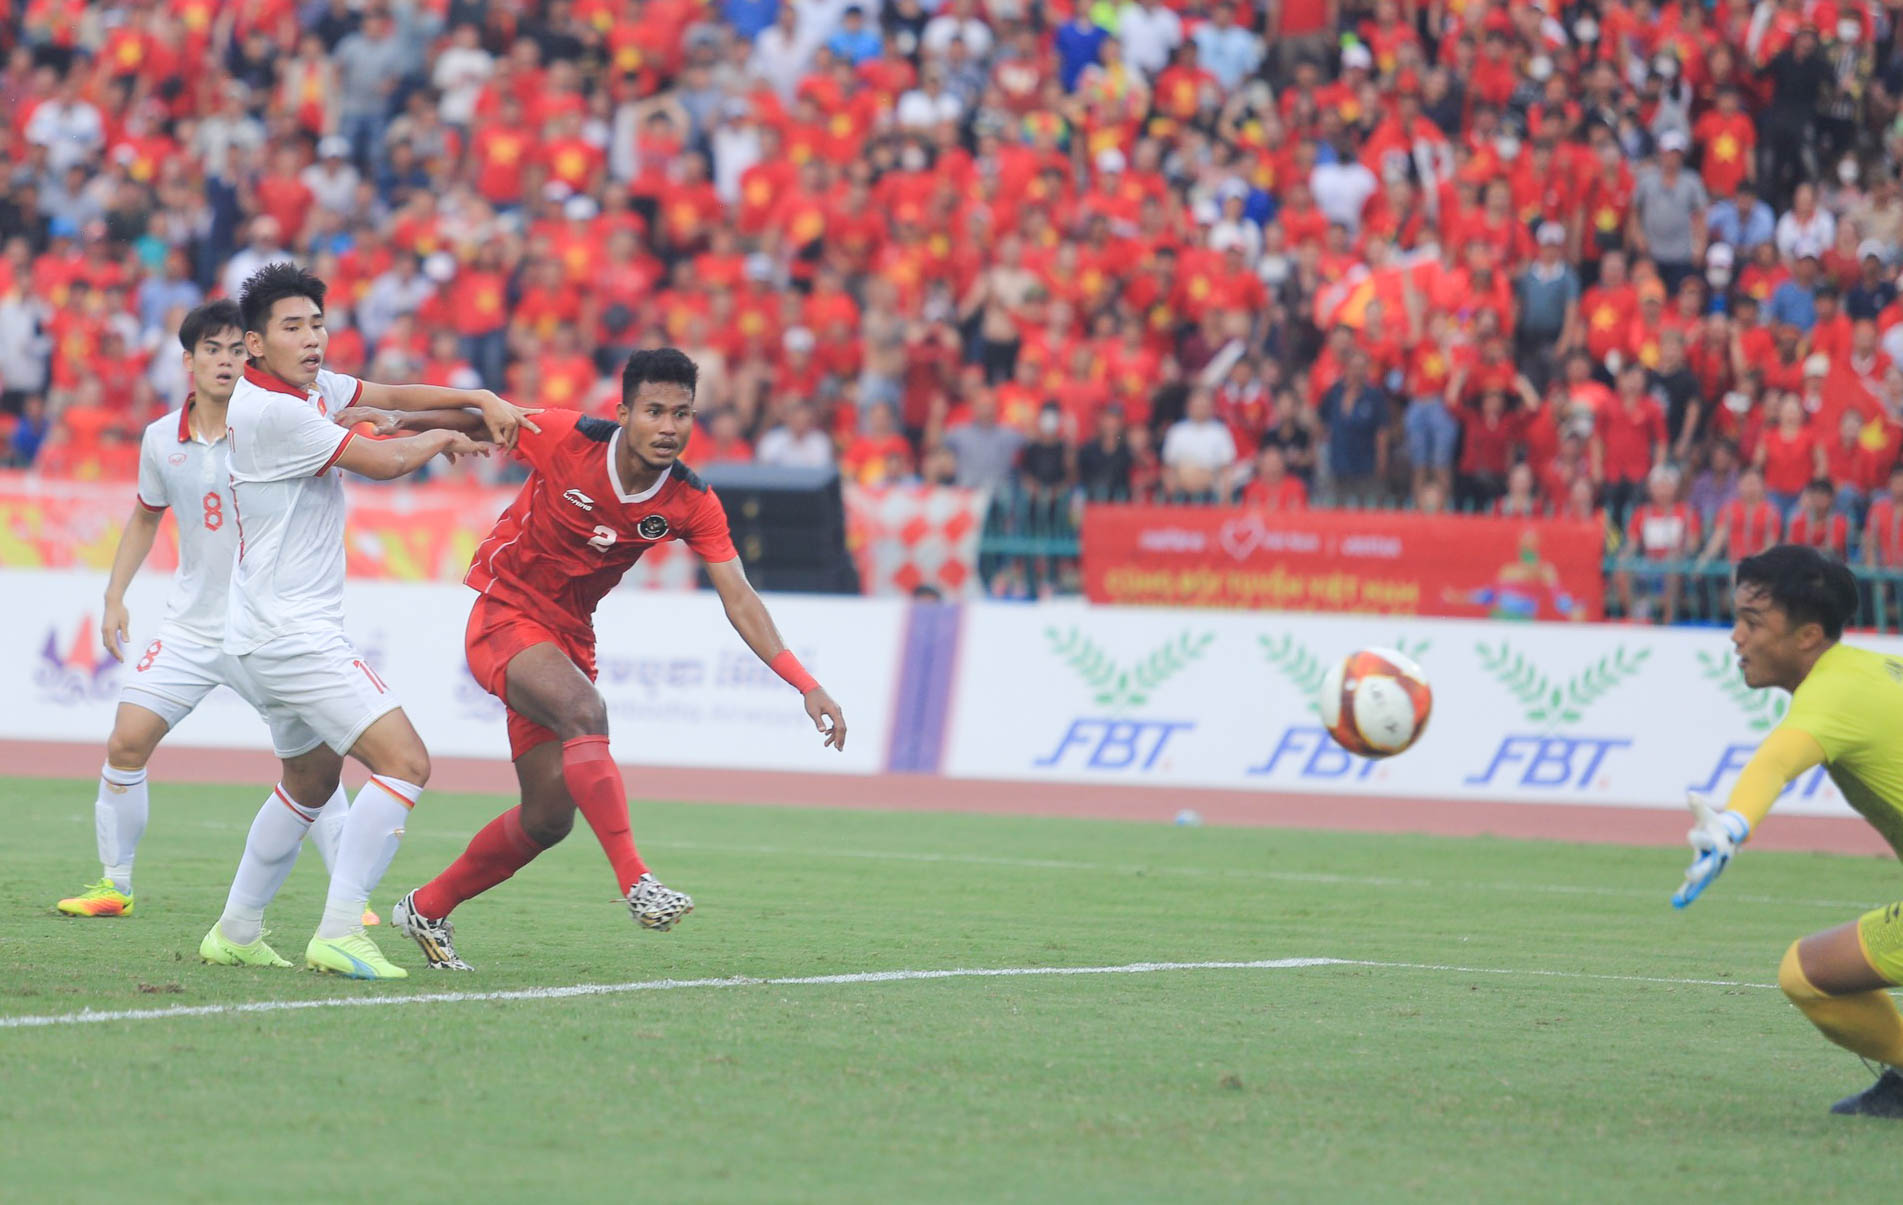 Tuyển thủ U22 Việt Nam nằm sân ôm nhau ăn mừng cực hài khi U22 Indonesia nhận bàn phản lưới nhà - Ảnh 1.